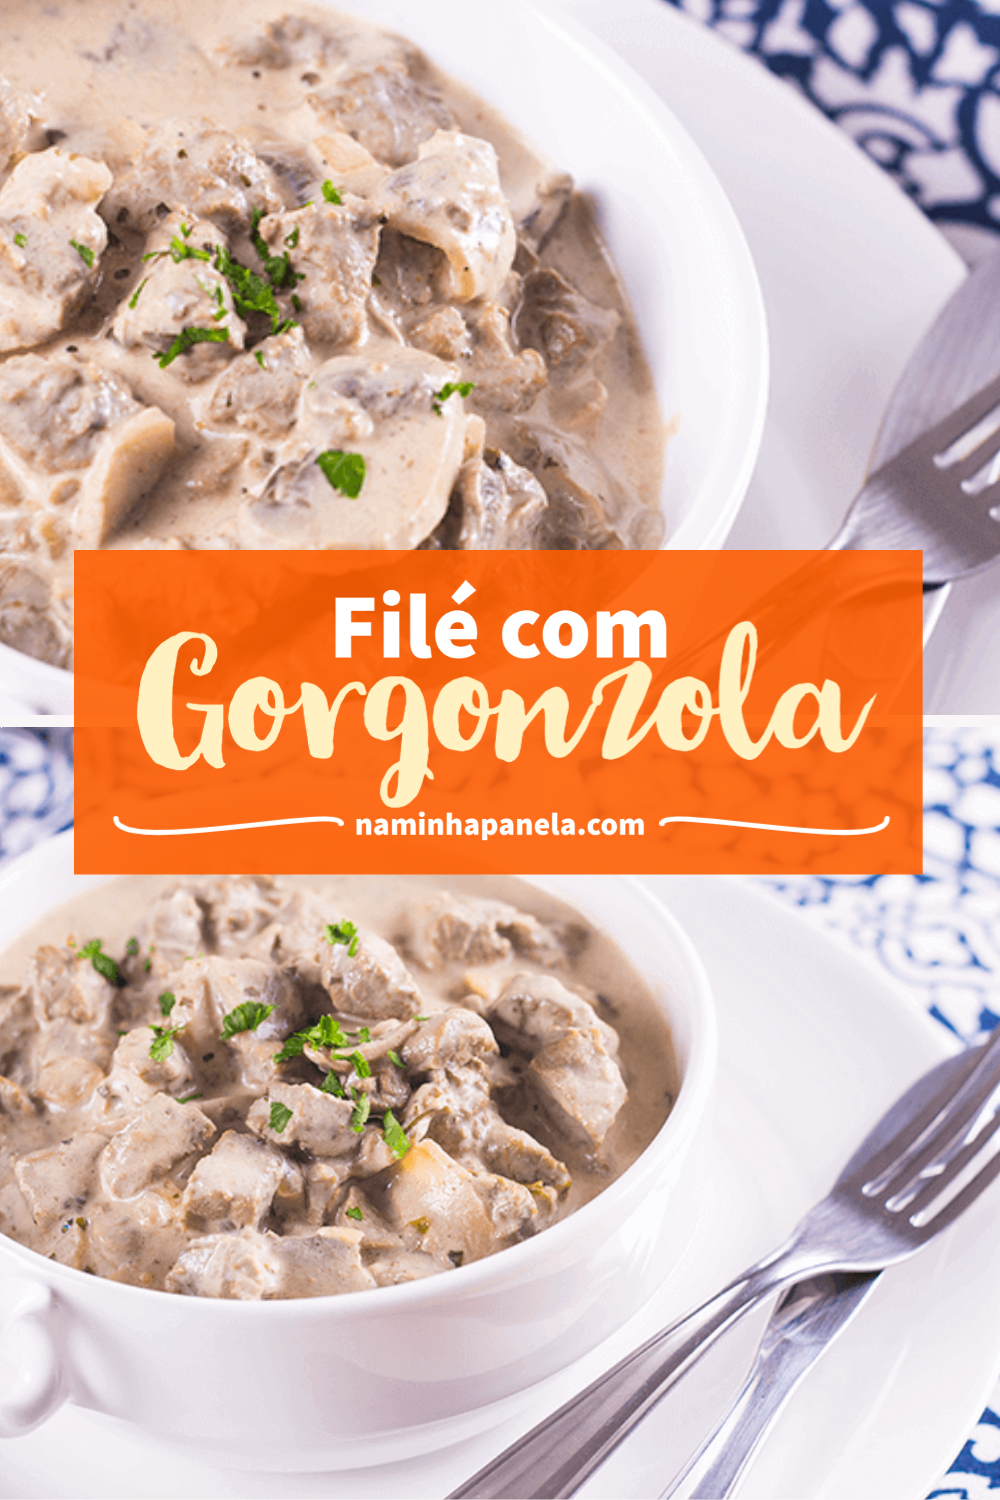 Filé com gorgonzola - naminhapanela.com